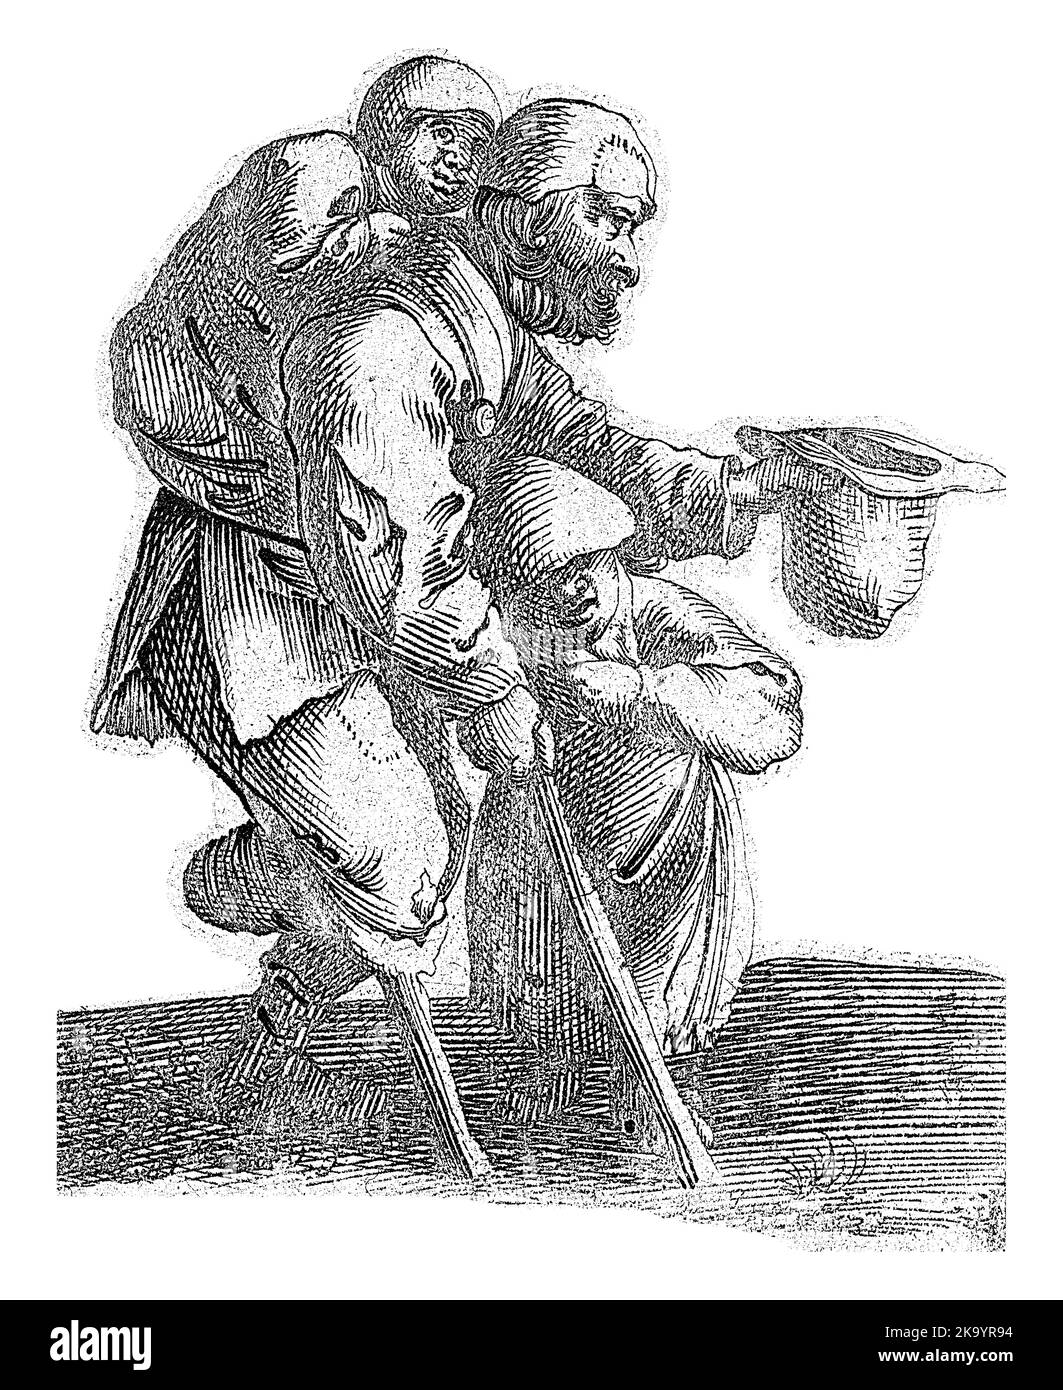 Un mendiant barbu avec une jambe en bois, penché sur son tabouret, porte un enfant sur son dos. L'homme supplie de son chapeau. Sous son bras se tient un deuxième enfant. Banque D'Images